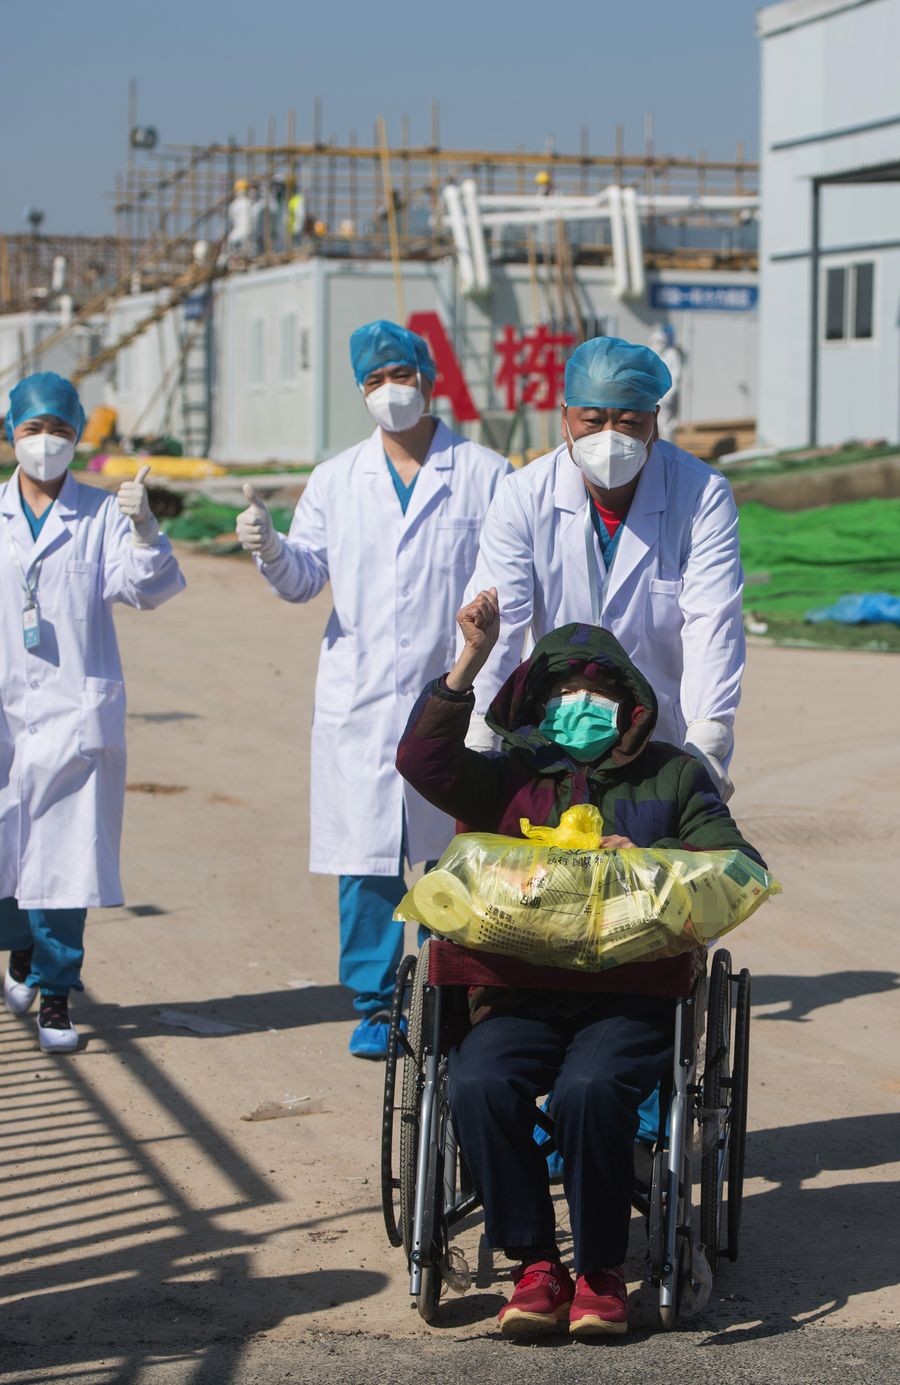 شاهد: مستشفى في "ووهان" يشهد خروج أول حالة إصابة بفيروس كورونا